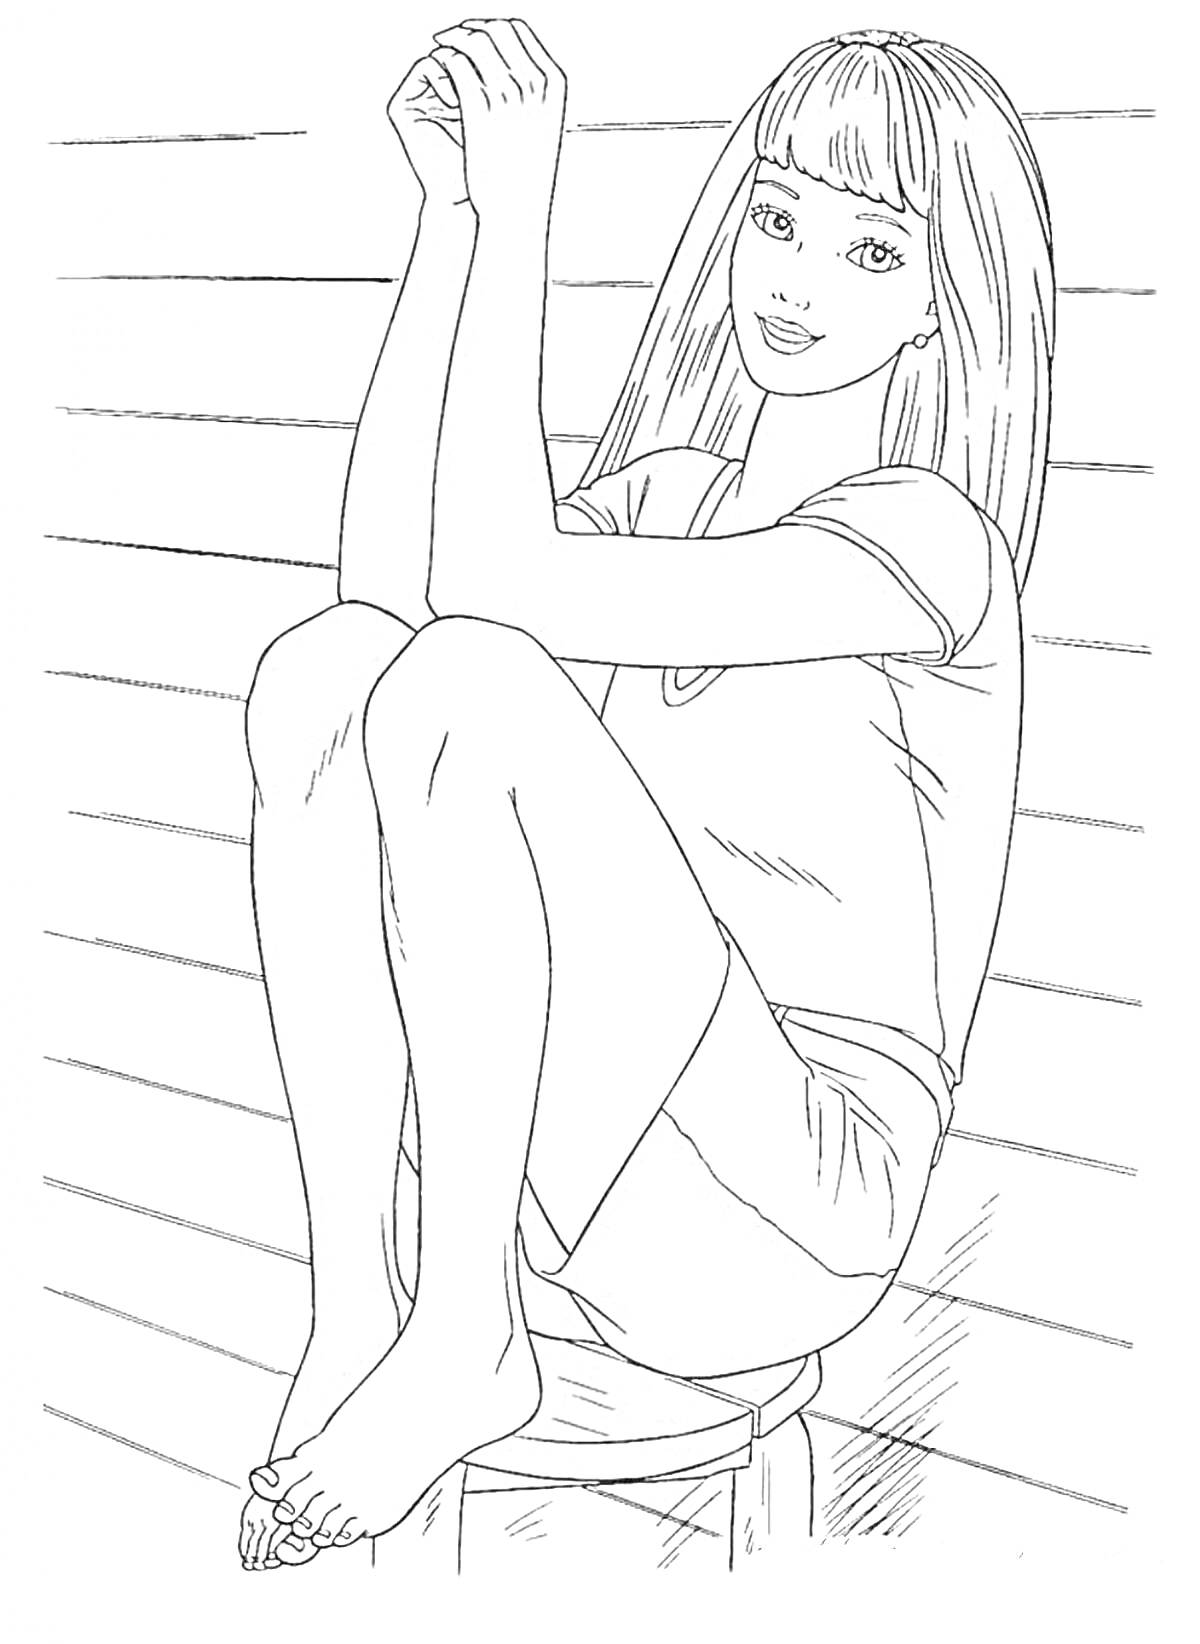 Раскраска Девушка с длинными волосами, сидящая на табурете, фоном которых служат горизонтальные линии